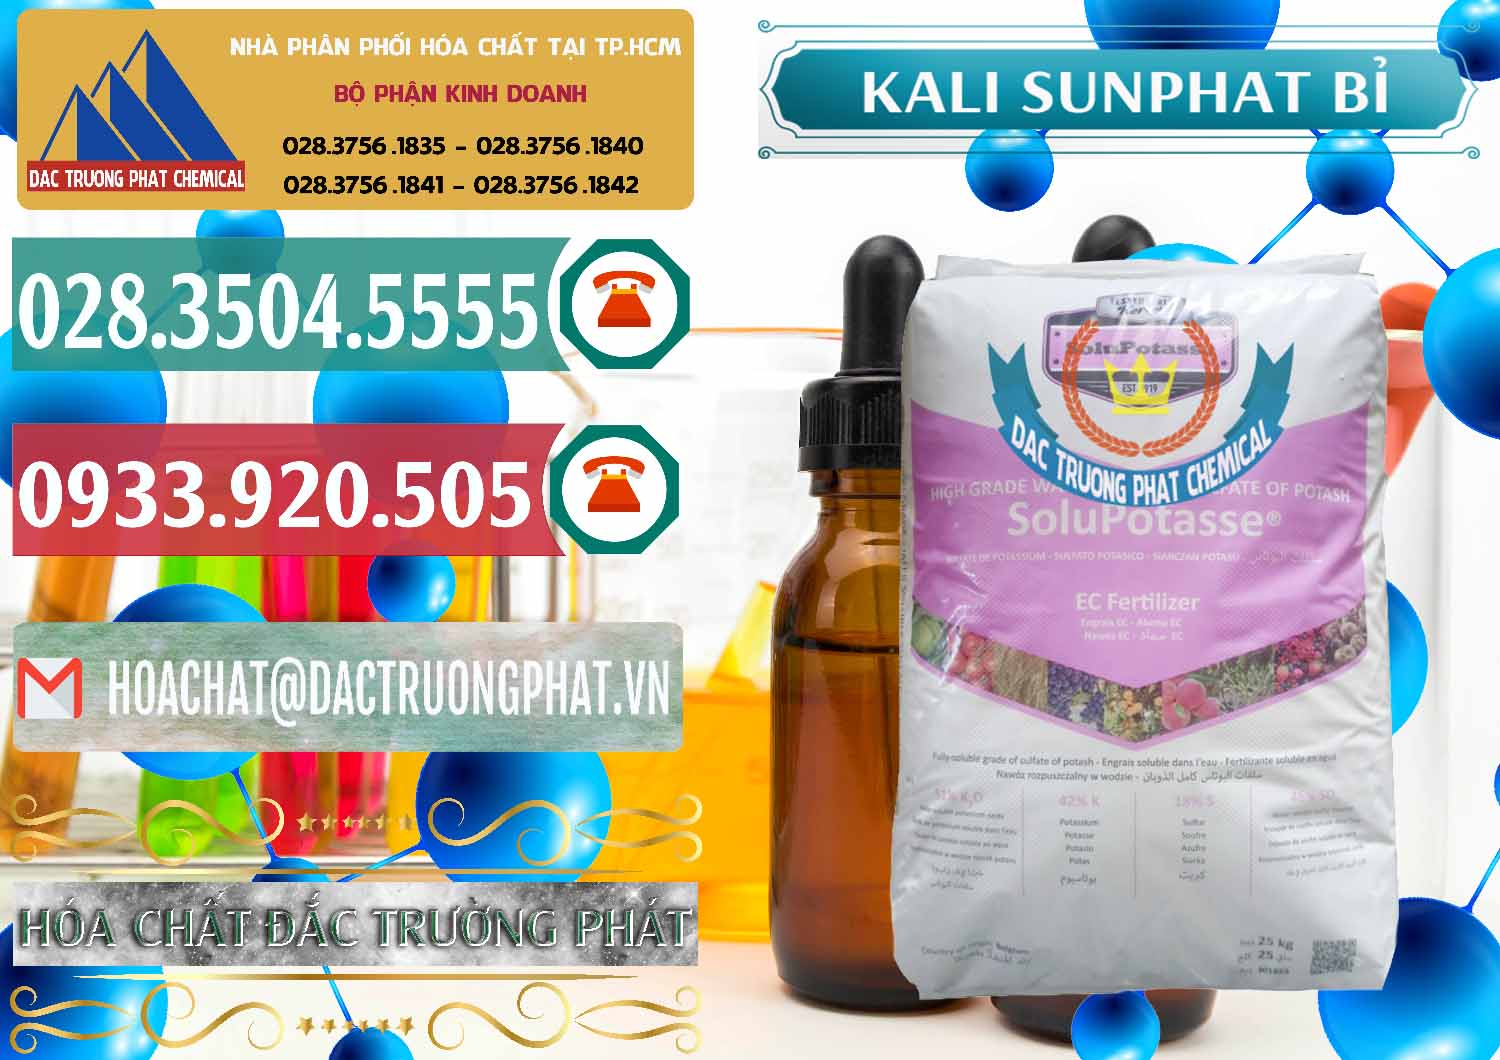 Công ty chuyên kinh doanh & bán Kali Sunphat – K2SO4 Bỉ Belgium - 0406 - Cung cấp - nhập khẩu hóa chất tại TP.HCM - muabanhoachat.vn